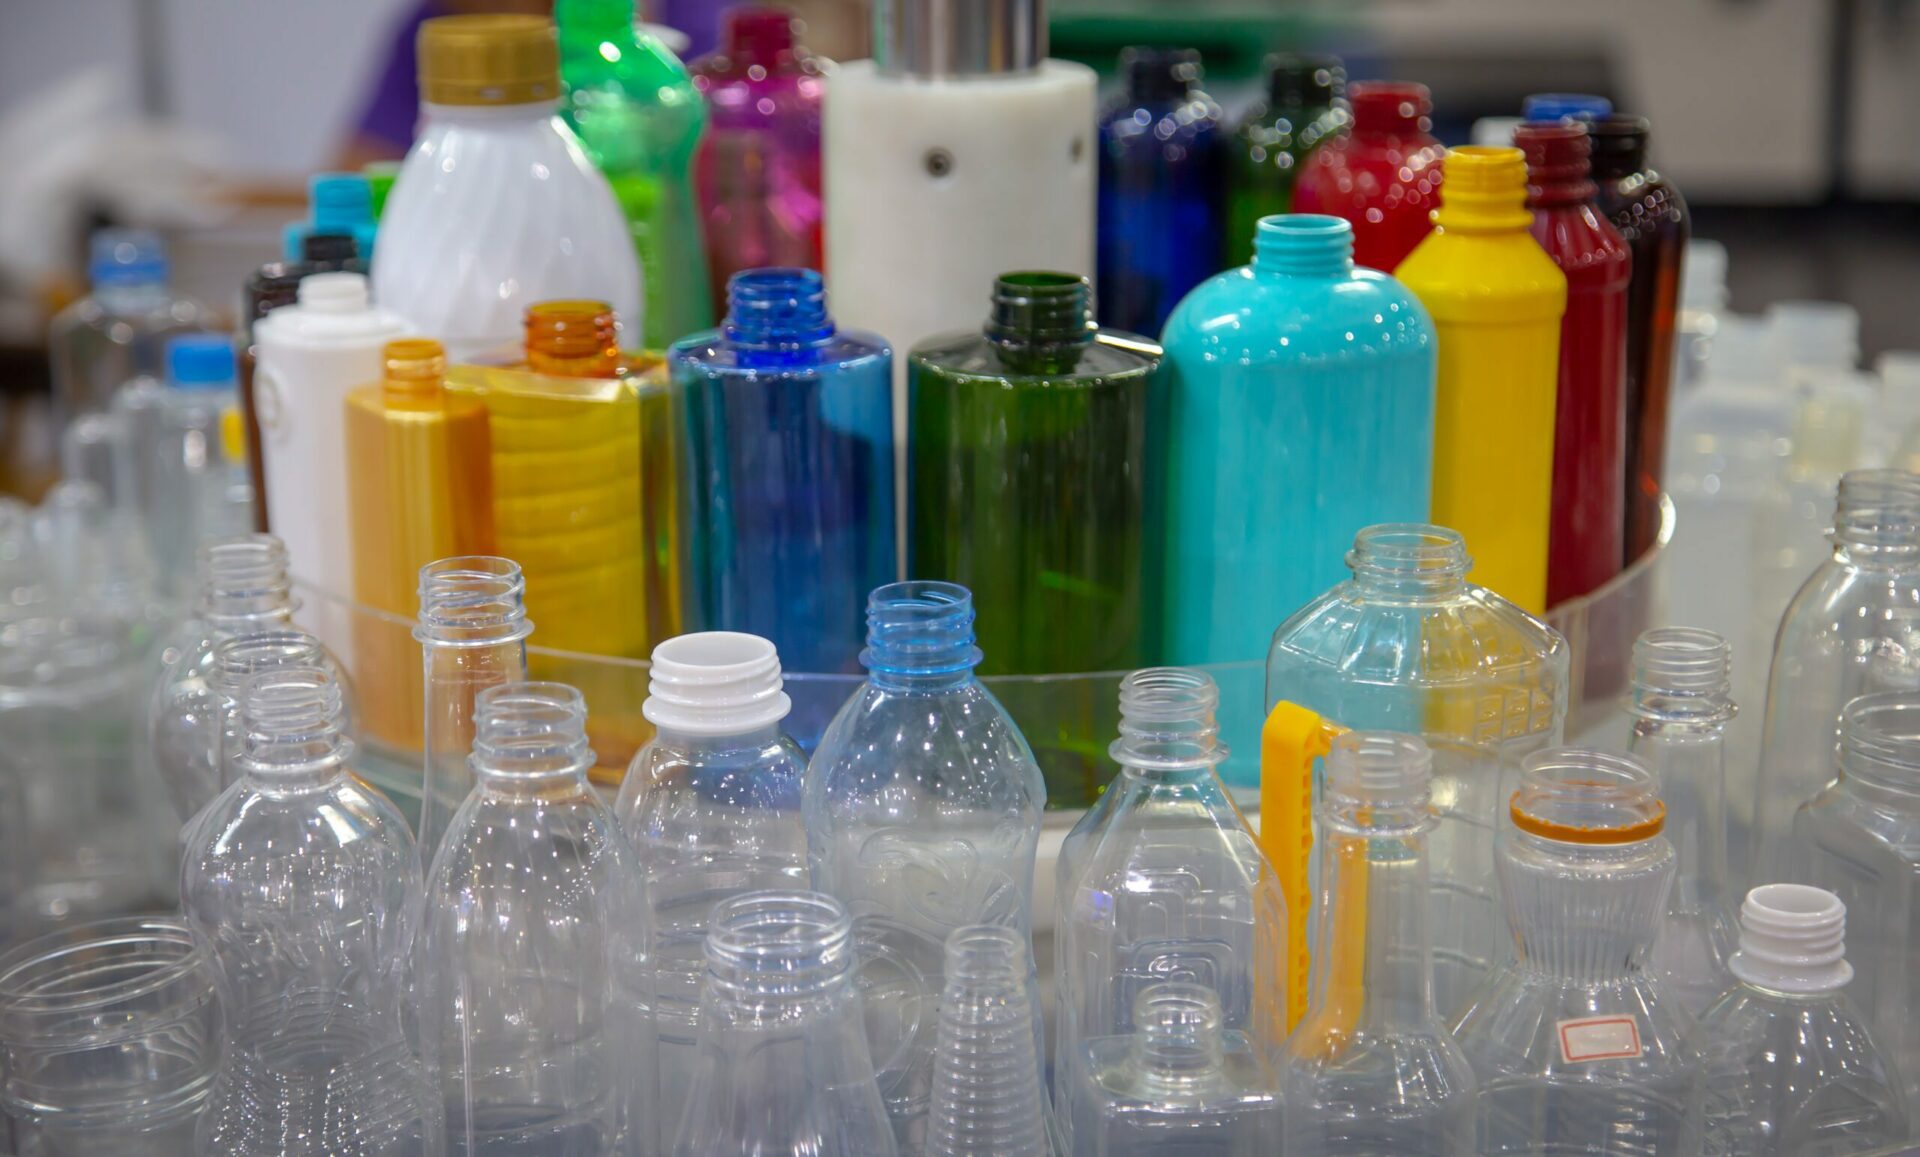 پلاسٹک کی مصنوعات، بشمول مائیکرو پلاسٹک، عالمی سطح پر اپنی غیر متزلزل موجودگی کی وجہ سے تشویش کا باعث ہیں، جس سے ماحول میں EDCs کا اخراج ہوتا ہے۔